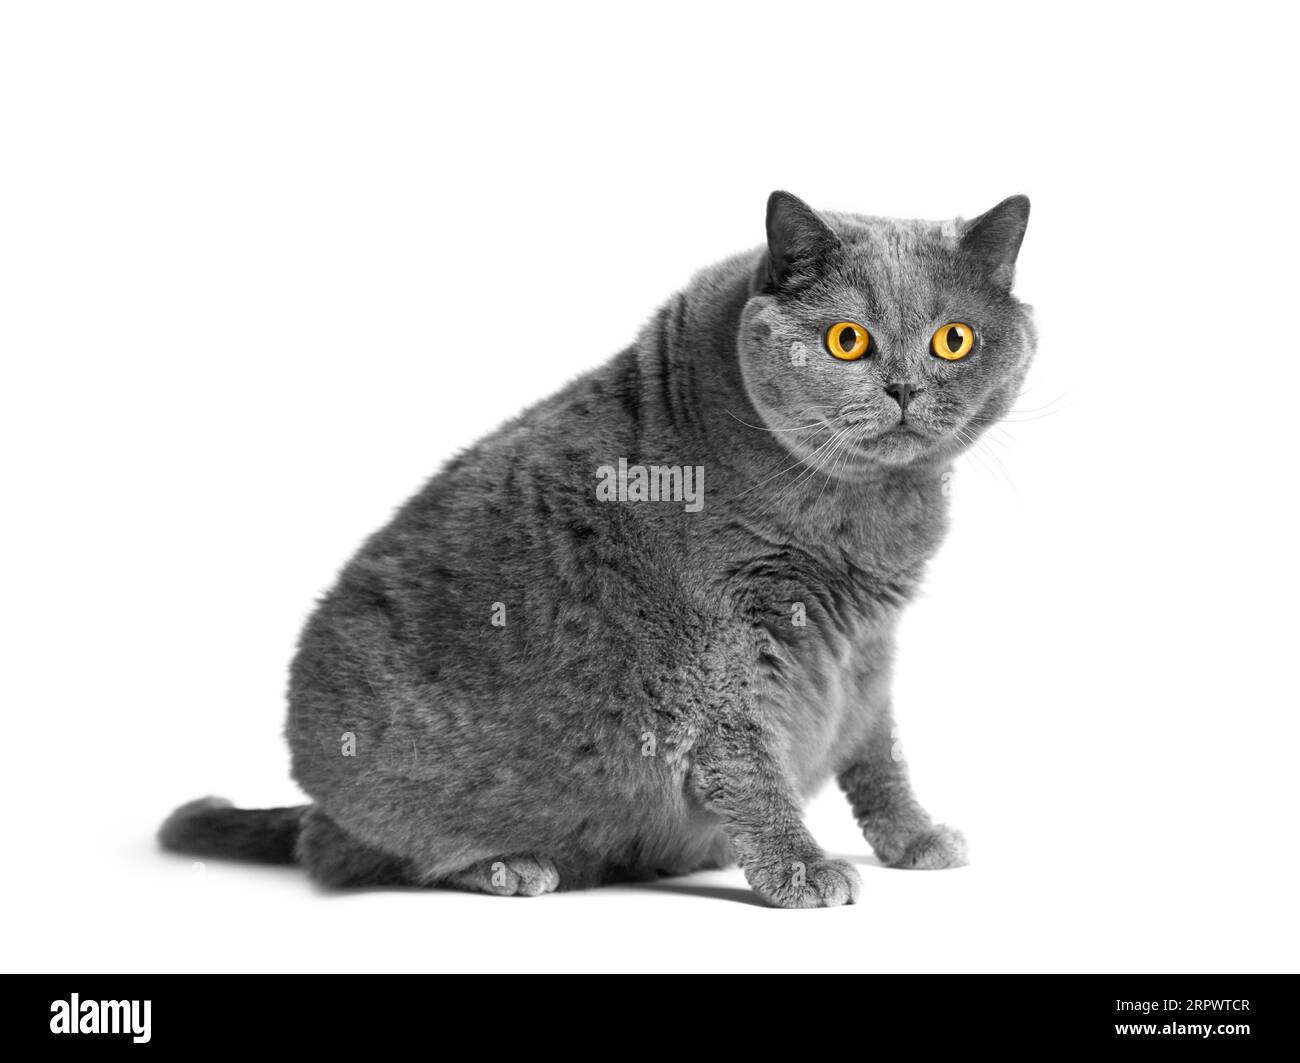 Un gros chat britannique gris avec de grands yeux jaunes est assis sur un fond blanc. Obésité du chat écossais. Banque D'Images